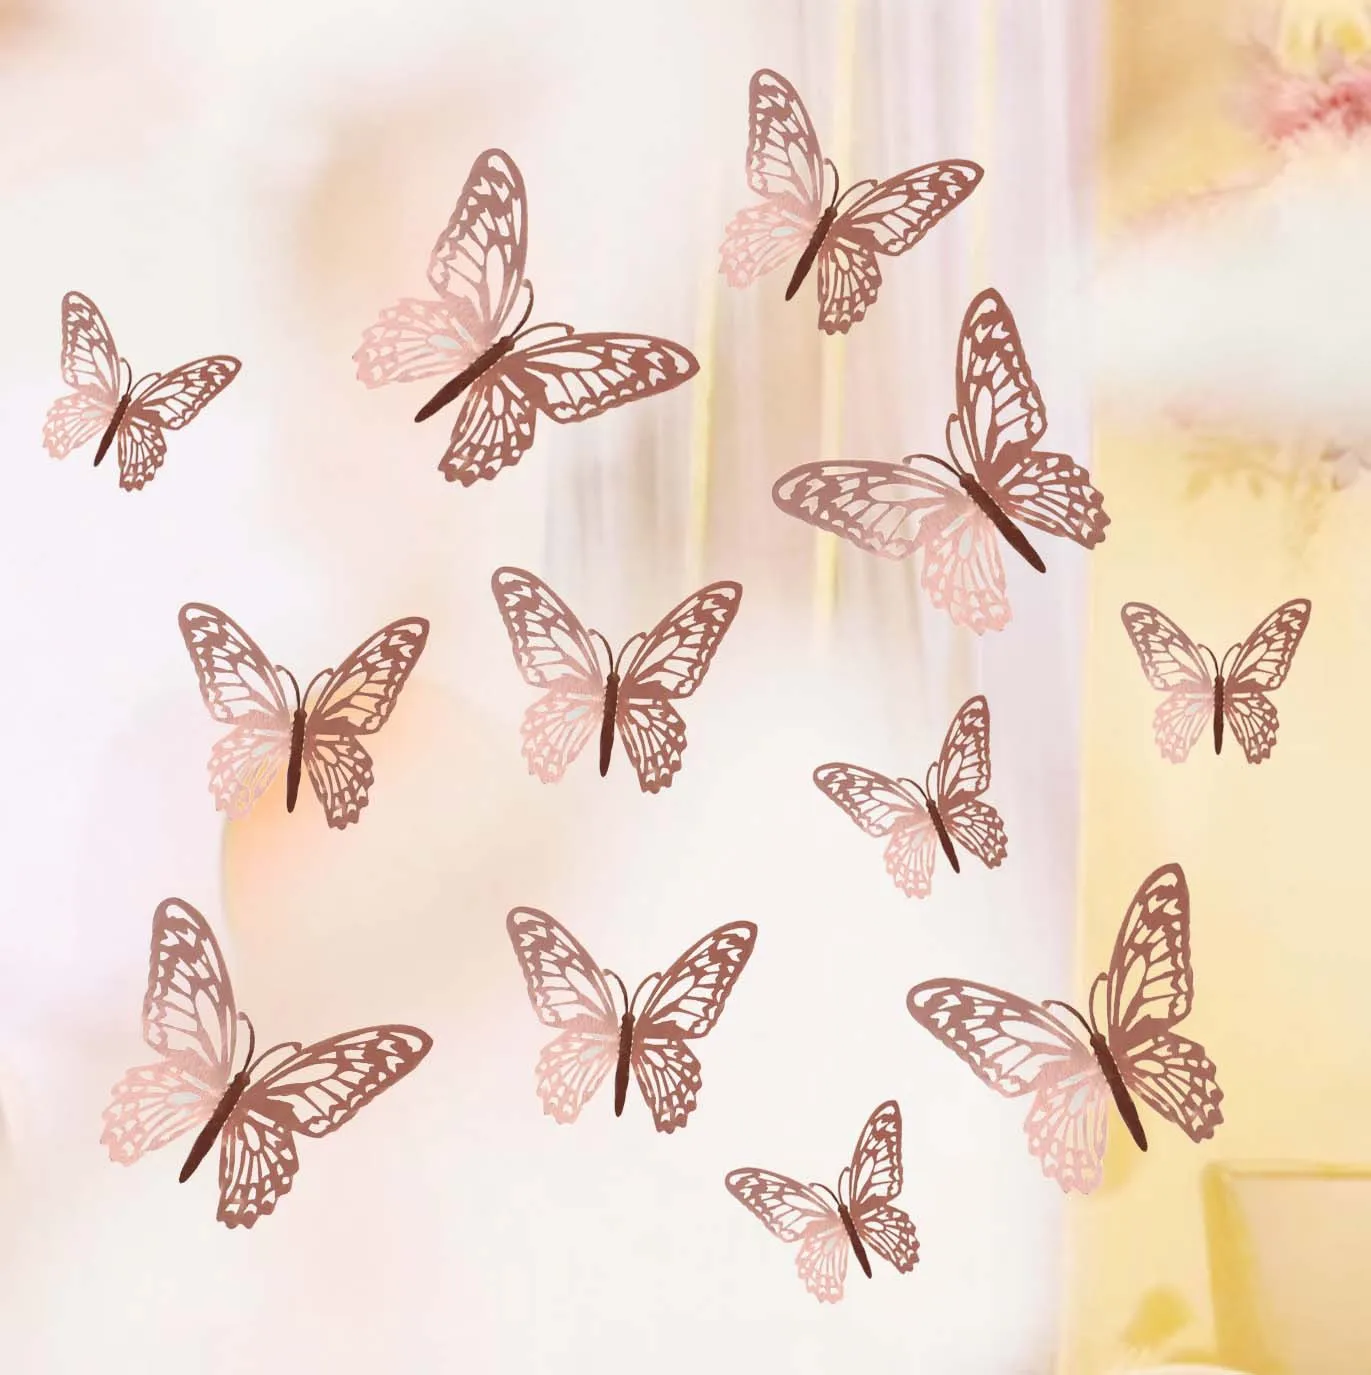 NEEKY Stickers Muraux Mural de Papillons pour décoration avec Les Tailles Différentes Autocollants Chambre bébé Chambre Couloir Frigo Meubles Salon 12Pcs 